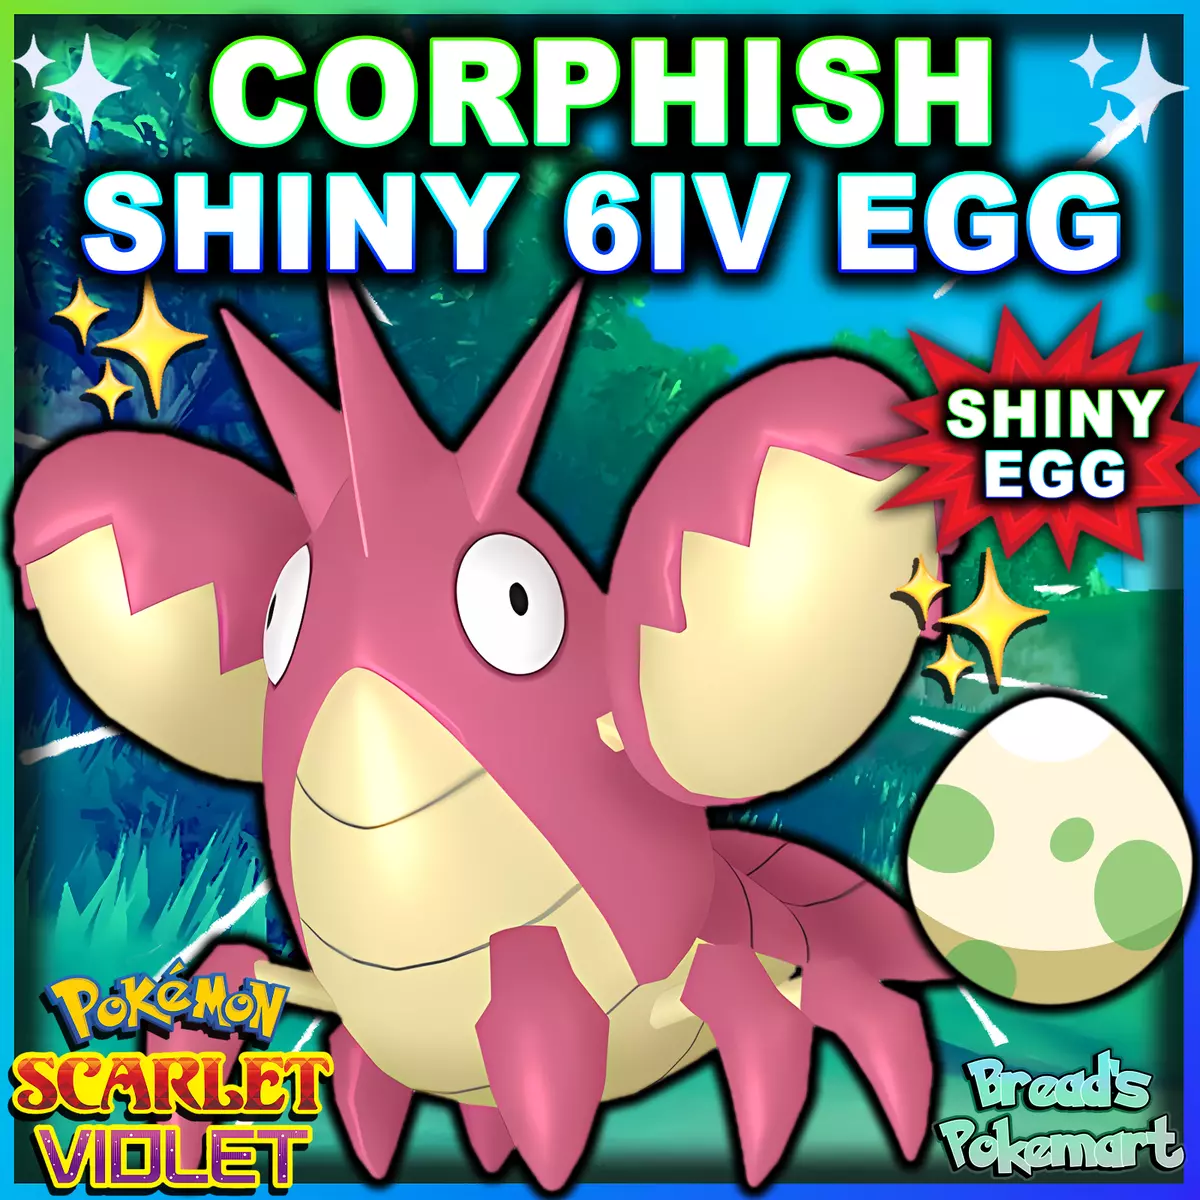 tips-pokemon-go-hoenn-new-little-monsters-eggs